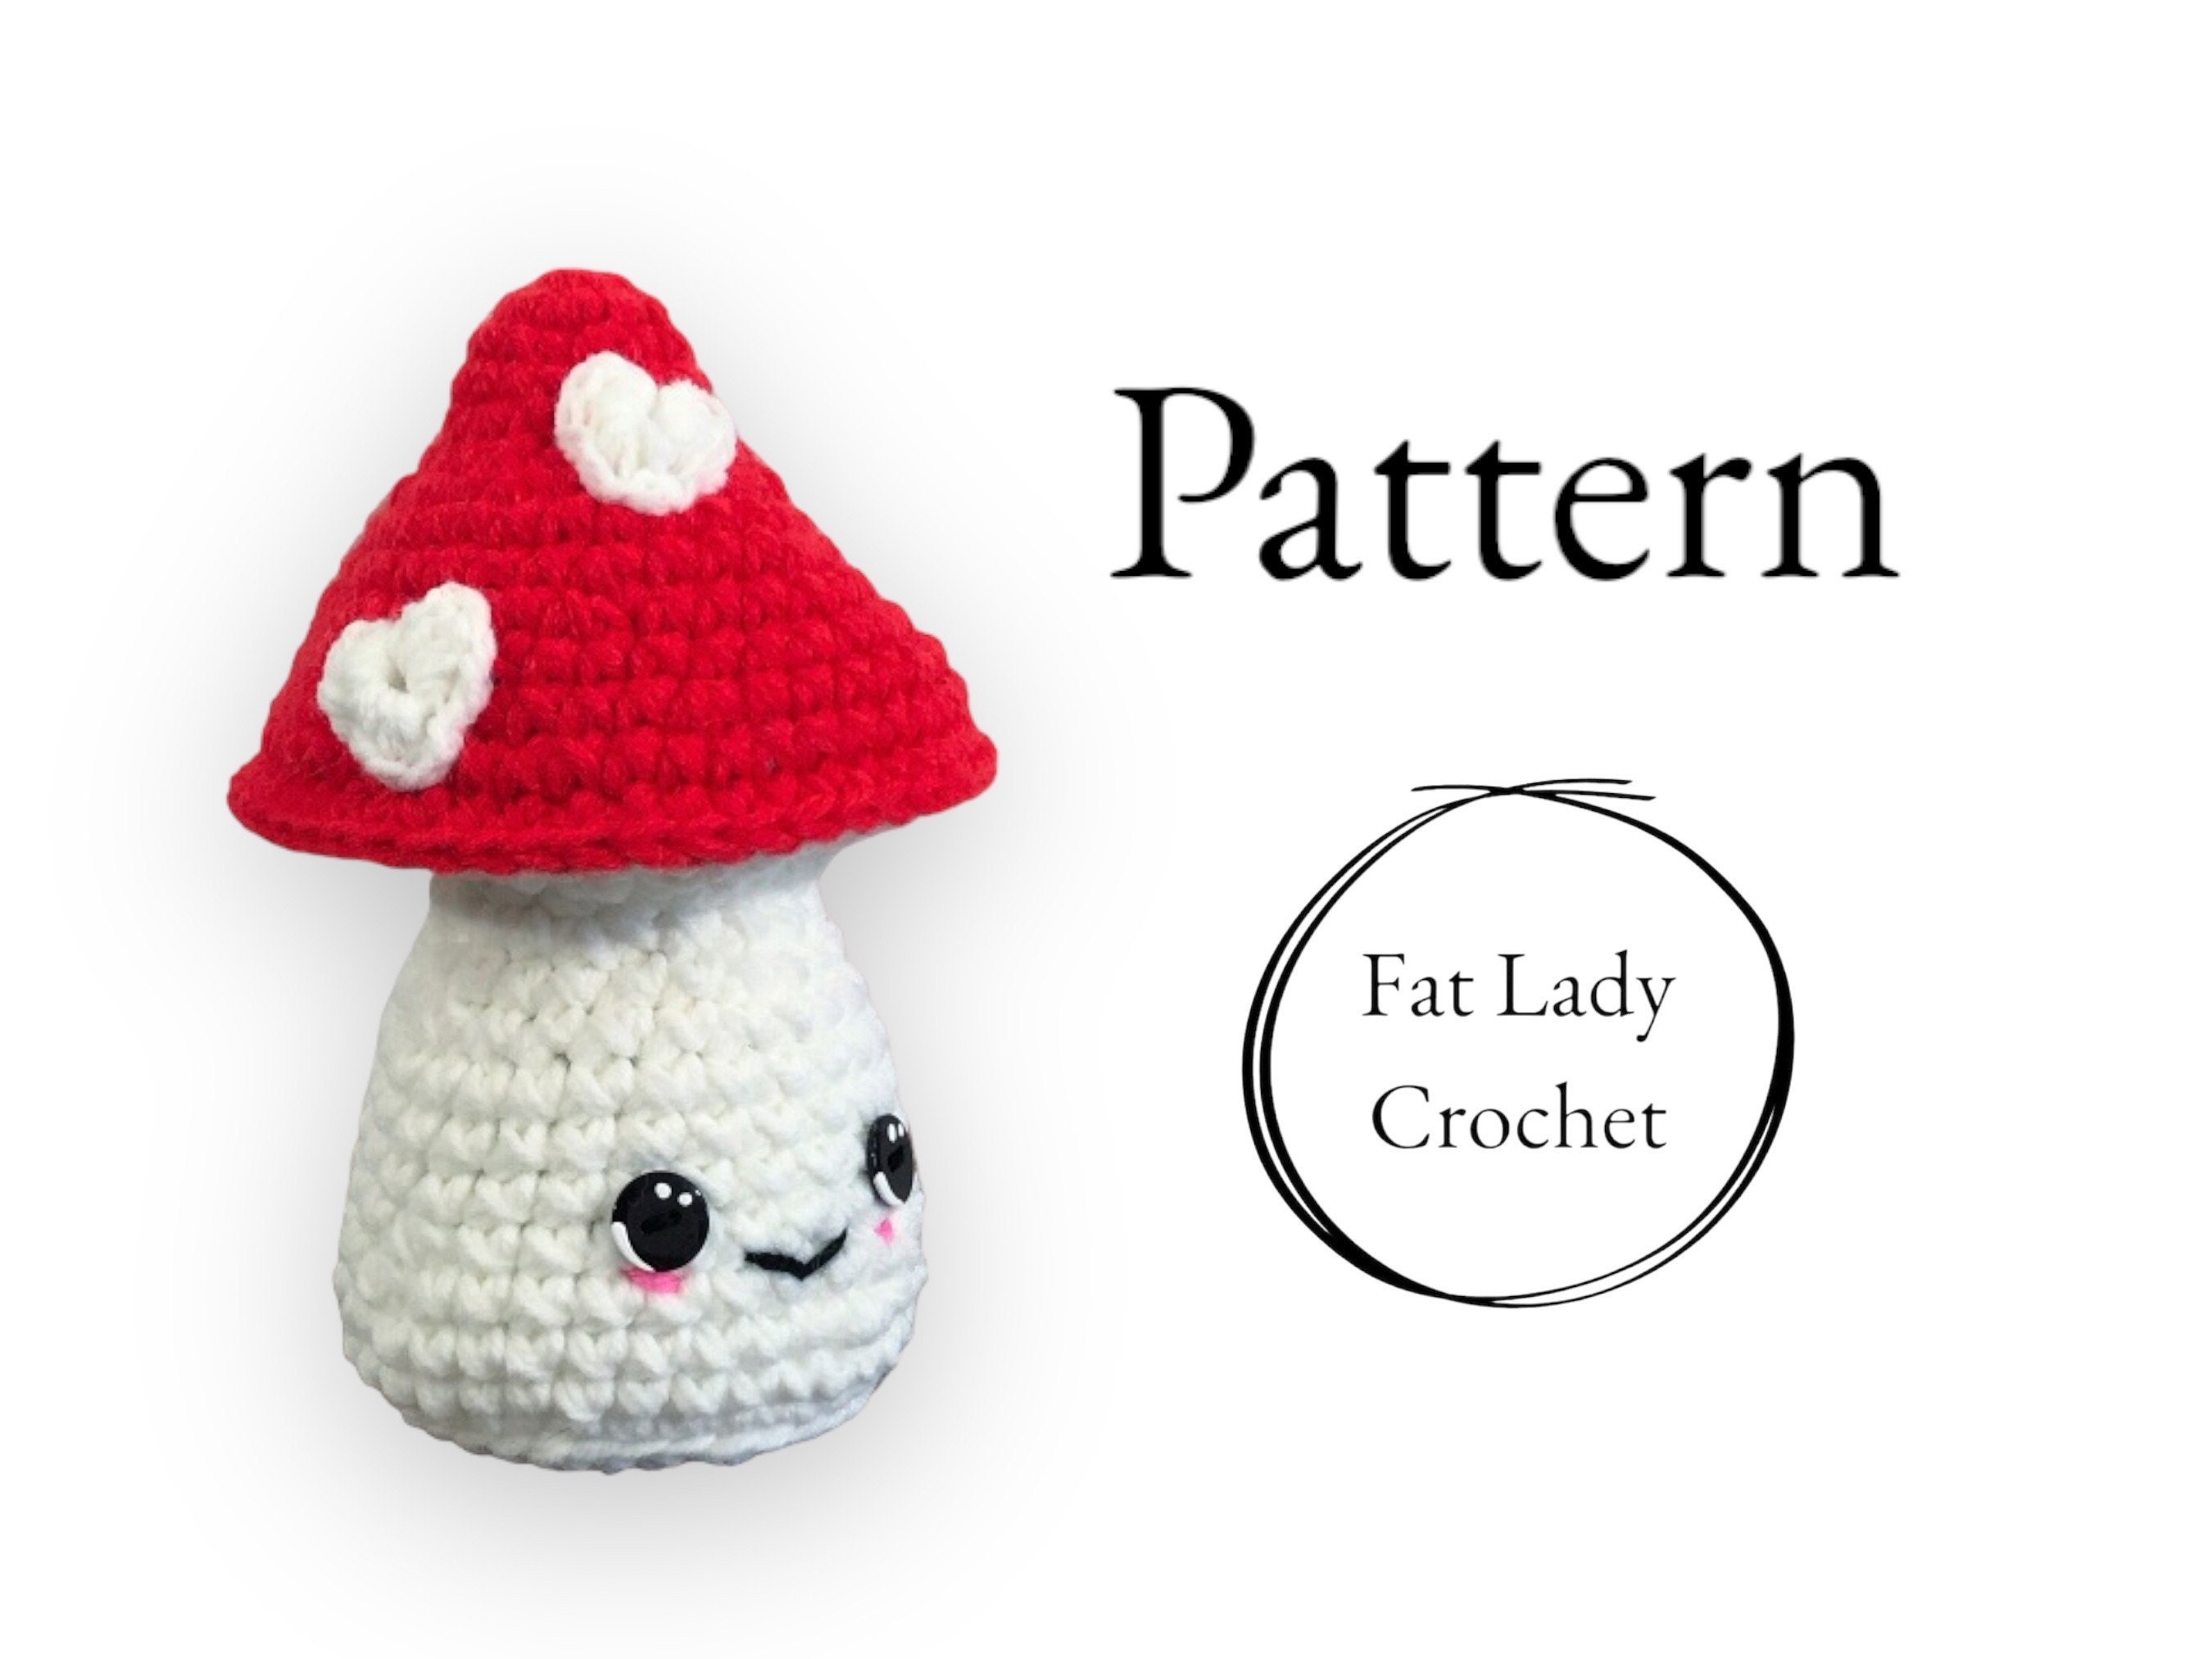 PATTERN: Easy Crochet Mushroom Etsy Finland